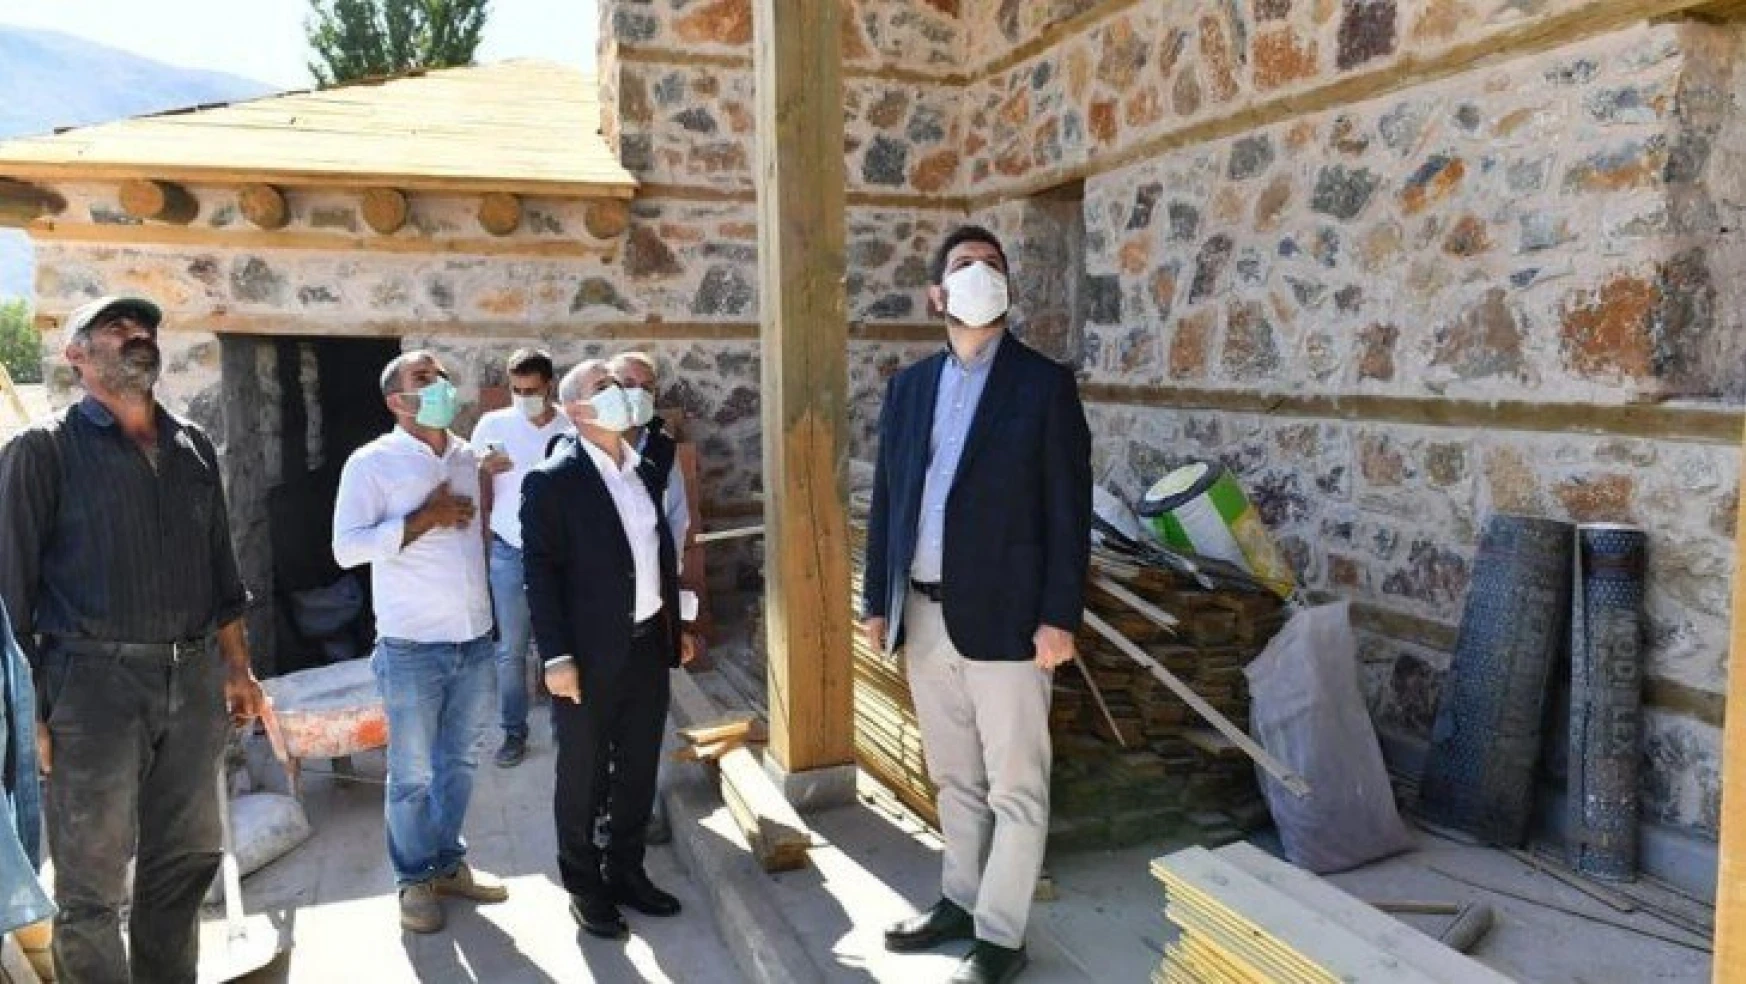 Yeşilyurt Belediyesi, Aşağıköy'deki 350 yıllık tarihi camiyi restore etti